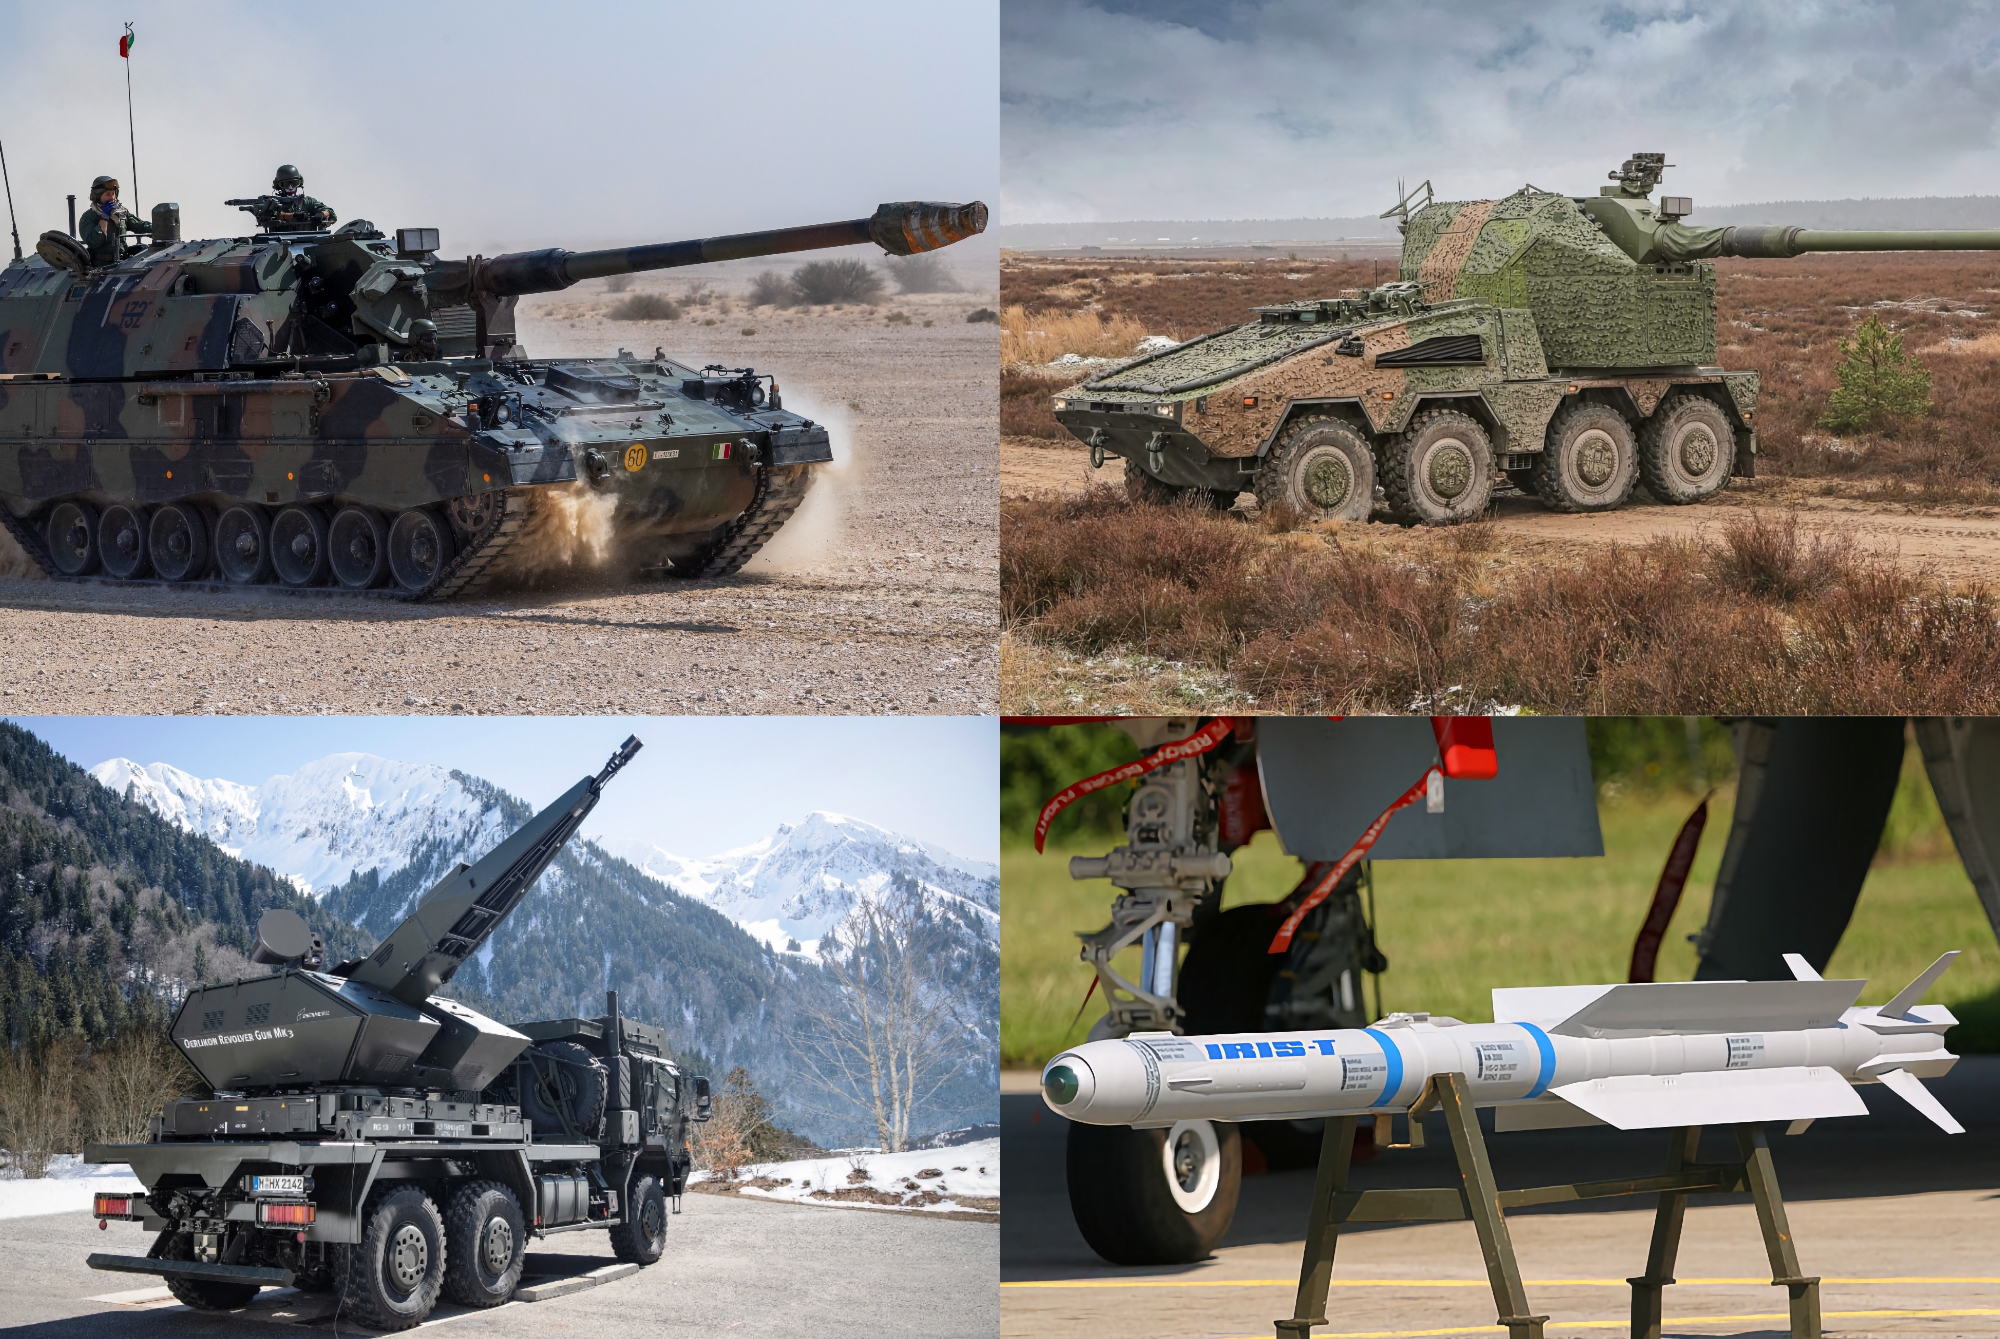 36 systèmes d'artillerie PzH 2000, RCH 155, 100 missiles pour IRIS-T et 2 systèmes antiaériens Skynex : L'Allemagne a révélé les détails d'un nouveau programme d'aide militaire de 1,1 milliard d'euros pour l'AFU.